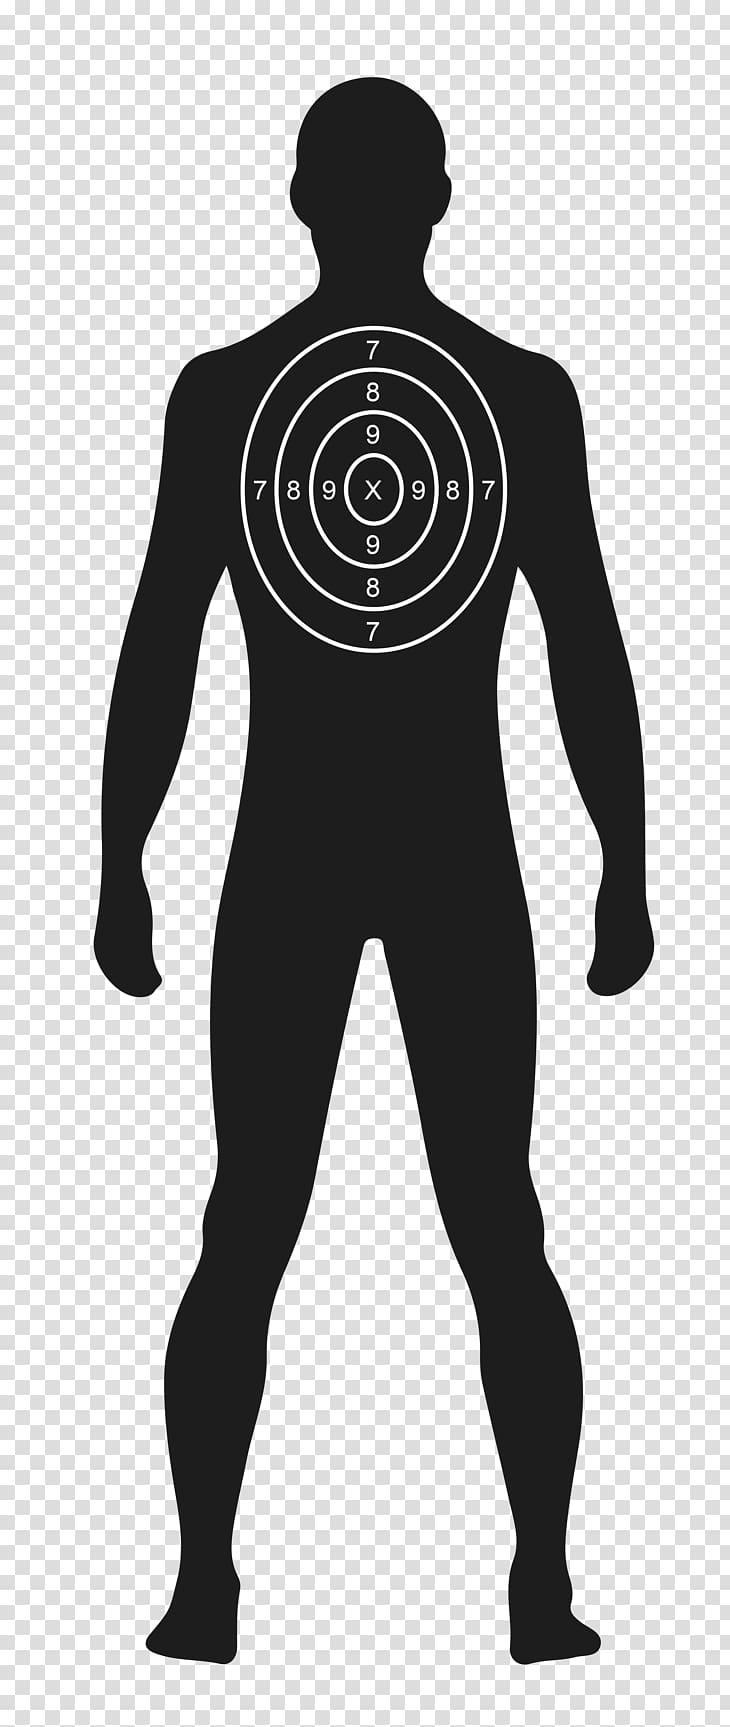 Shooting target Human Target Practice Gun Homo sapiens Character, Target transparent background PNG clipart